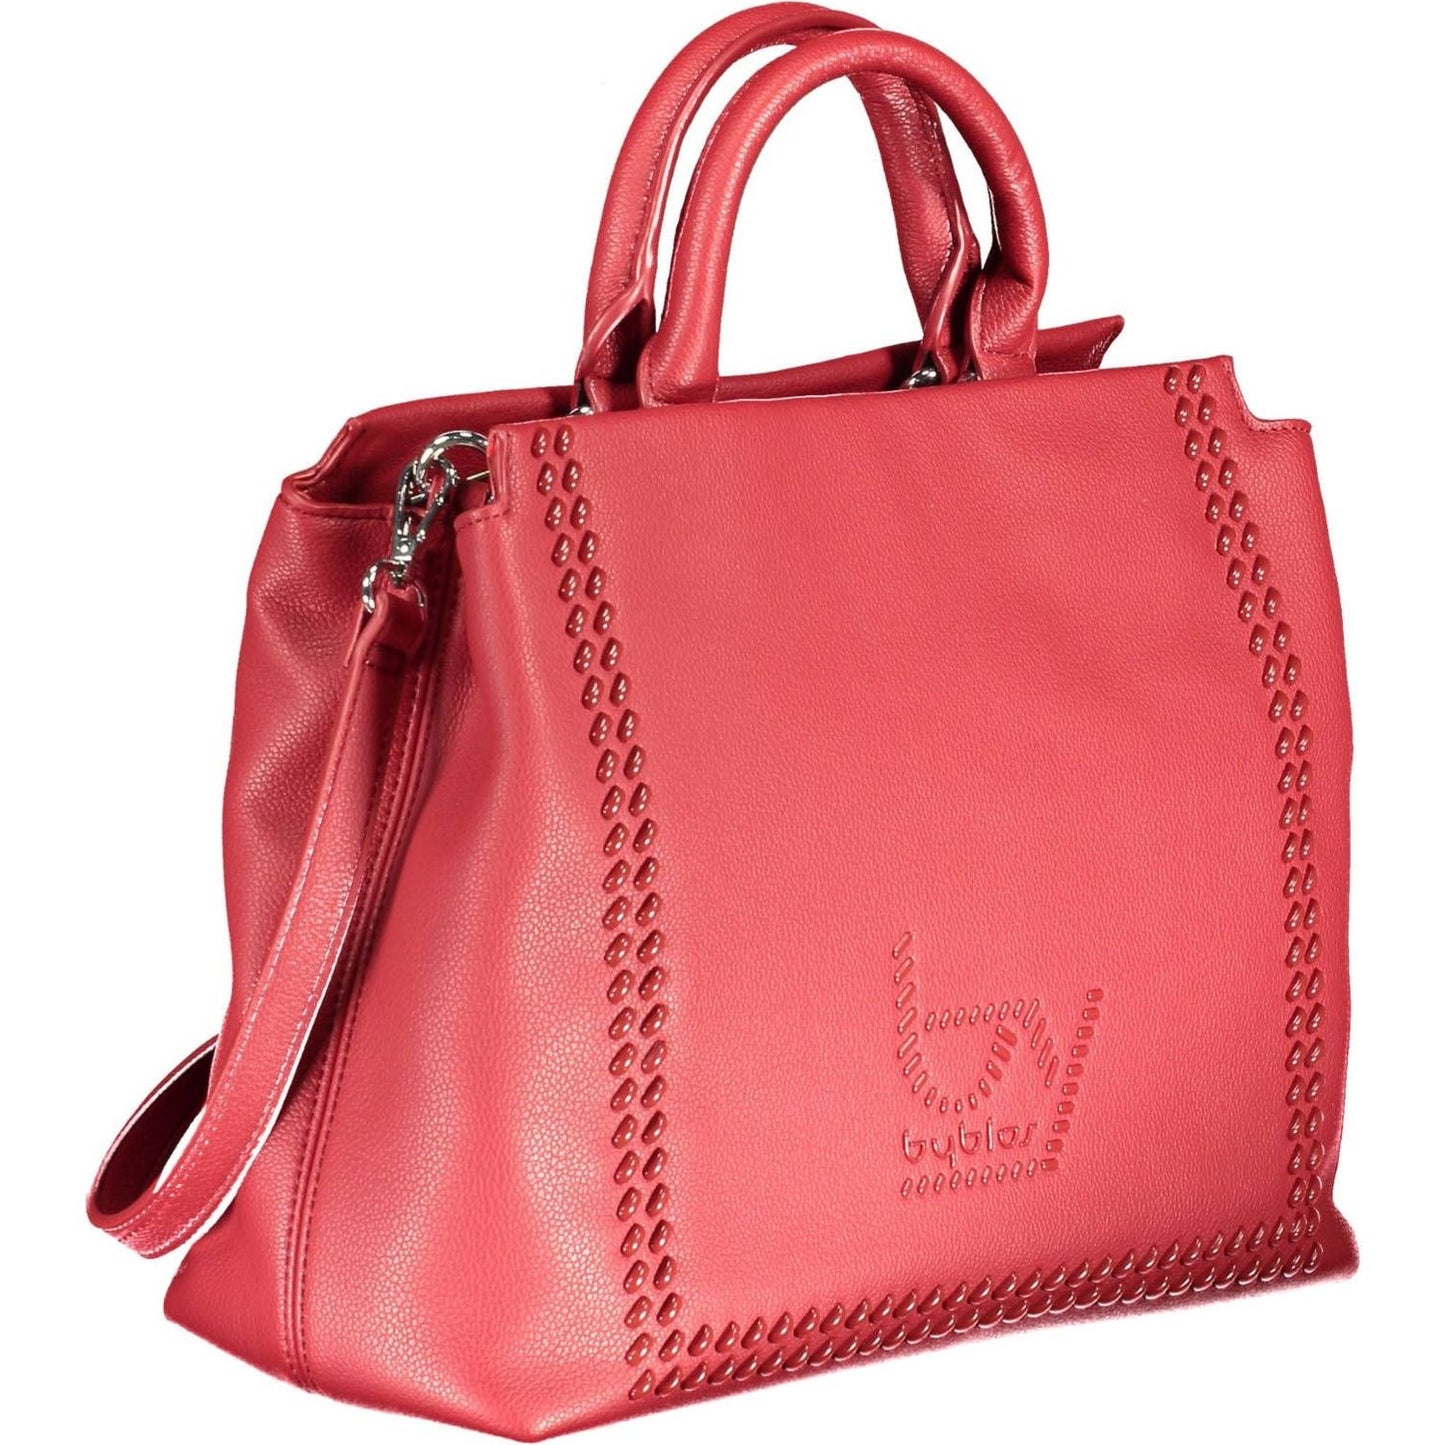 BYBLOS | Elegant Red Two-Compartment Handbag with Logo Detail| McRichard Designer Brands   